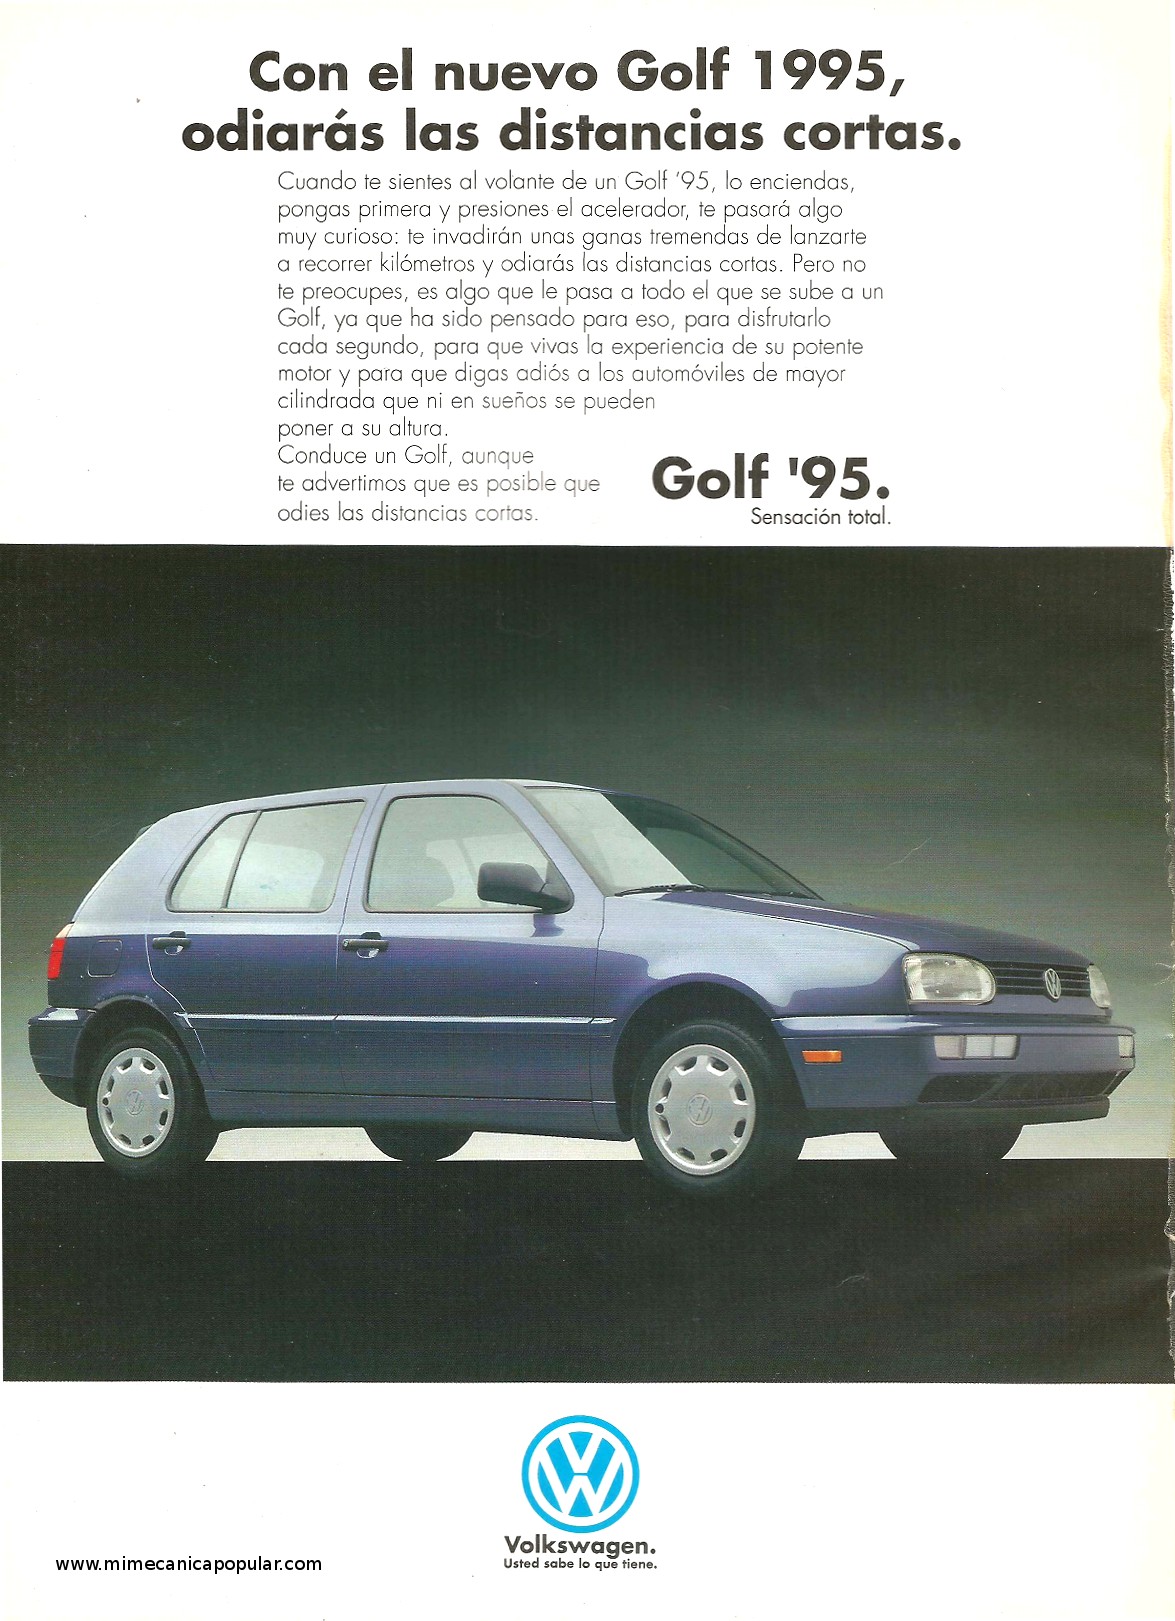 Publicidad - Volkswagen Golf 1995 - Diciembre 1994